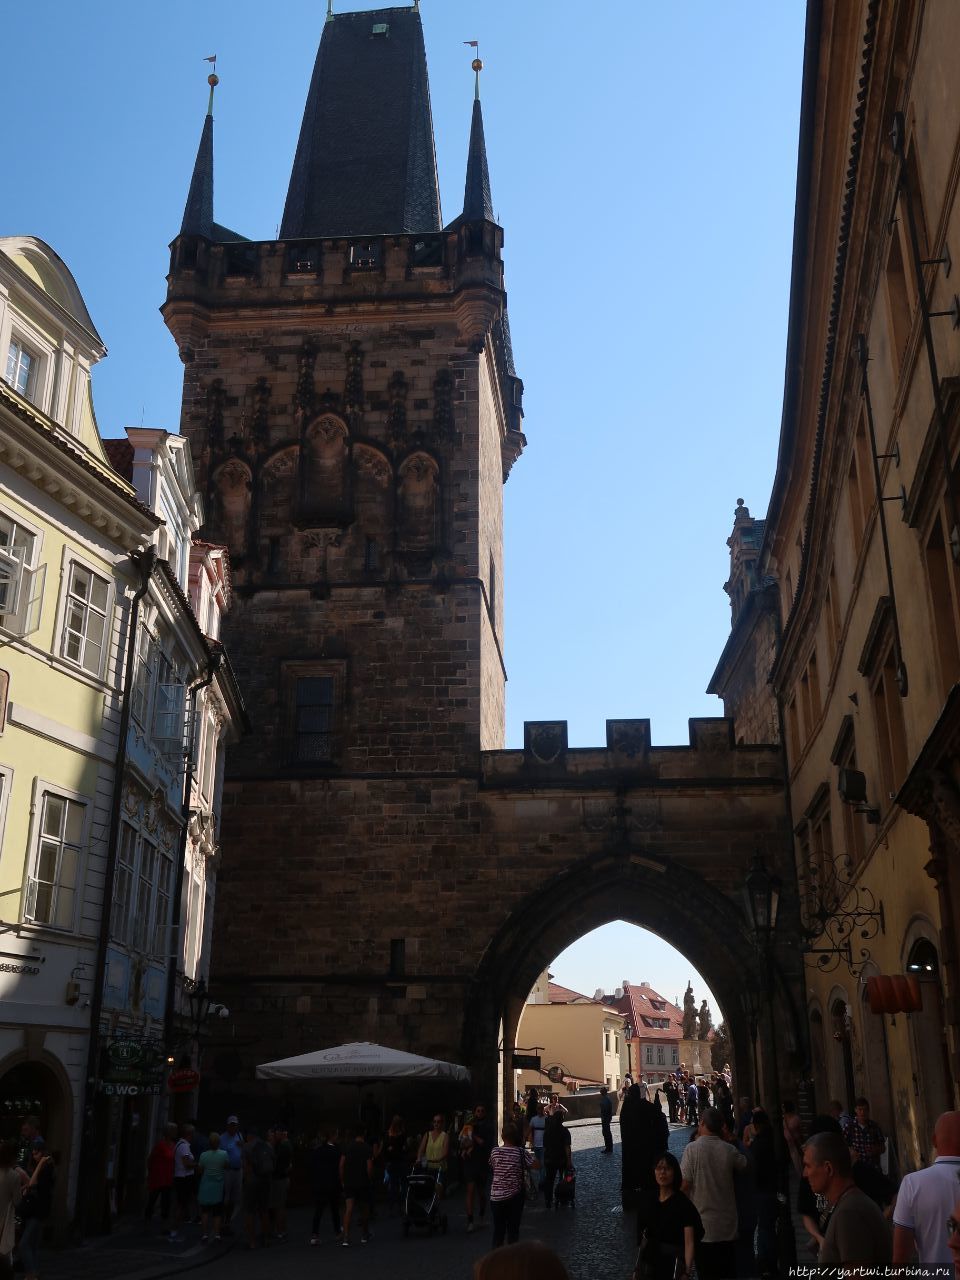 Малостранские мостовые башни — две башни на западном, малостранском конце Карлова моста, отличающиеся друг от друга по высоте и по архитектурному облику, стилю. Они соединены мощной двойной аркой в единое целое и обрамляют проход с Карлова Моста на Малу Страну. Здесь же начинается улица Мостецка. Прага, Чехия